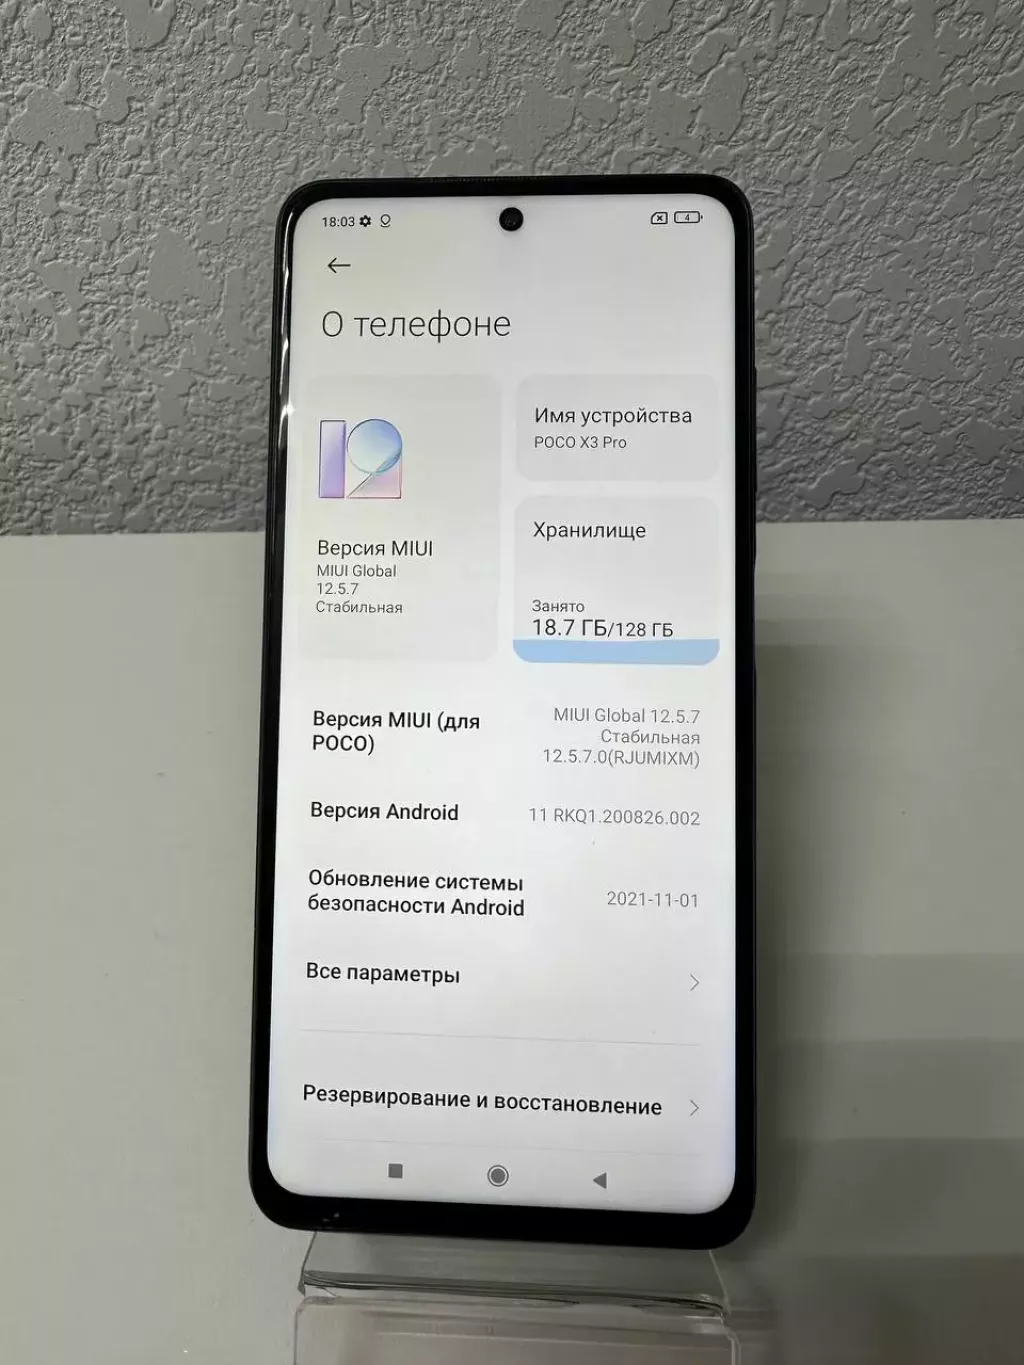 Купить б/у Смартфон Xiaomi Pocophone X3 Pro (Костанай 1018)-1